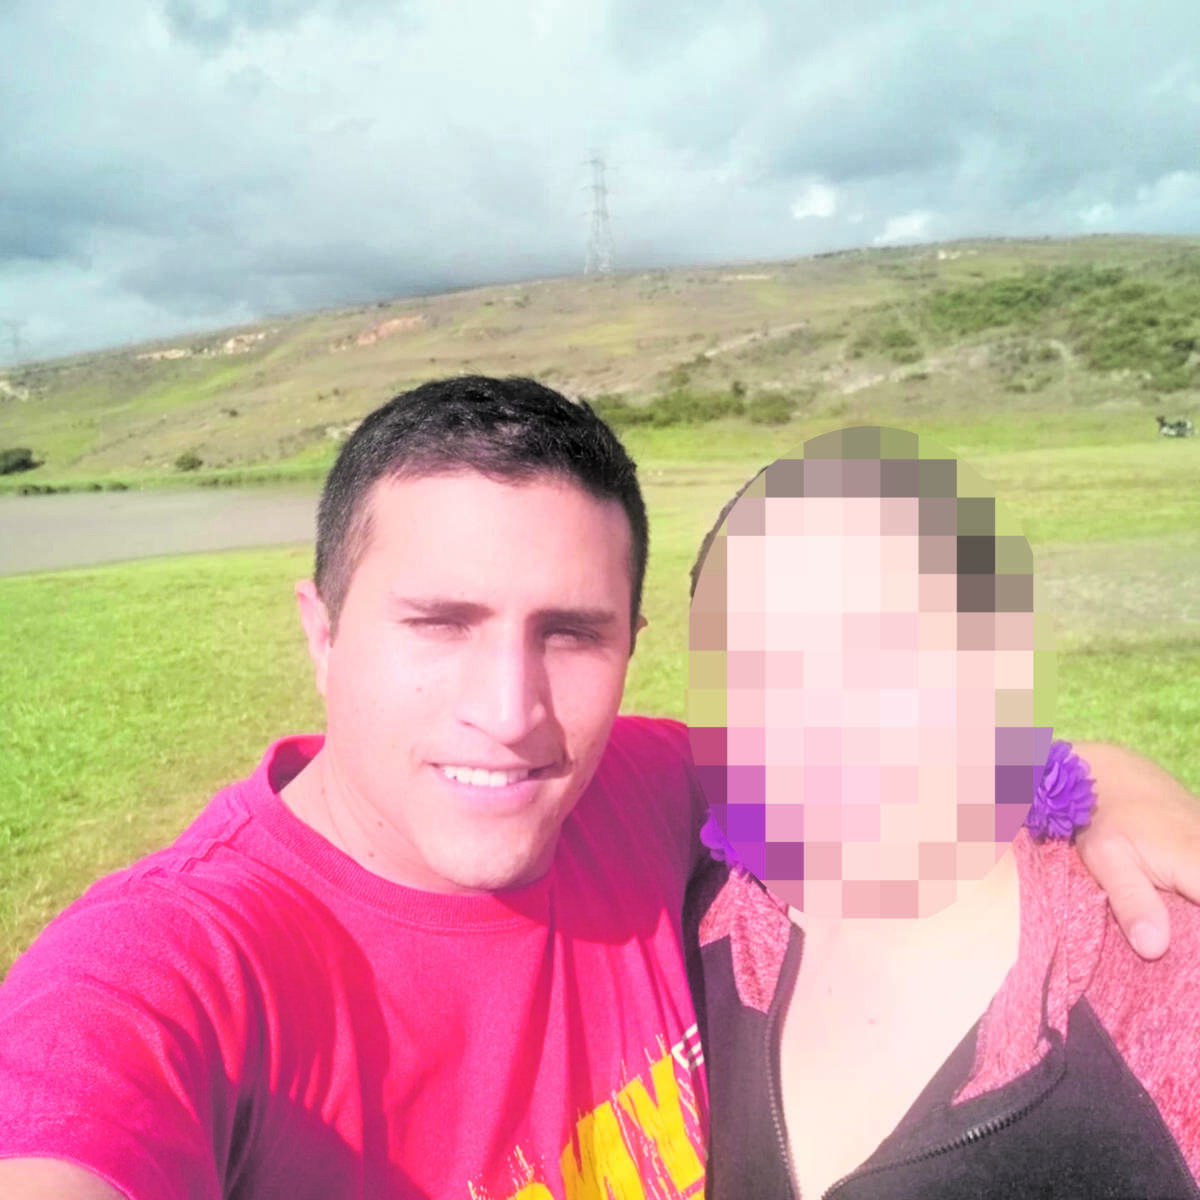 Policía ebrio mató a su compañero en Fontibón Cuando el policía Germán Andrés Moreno Solano se dirigía a su casa este martes después de terminar su turno de servicio, se vio envuelto en un aparatoso accidente de tránsito que terminó arrebatándole la vida.